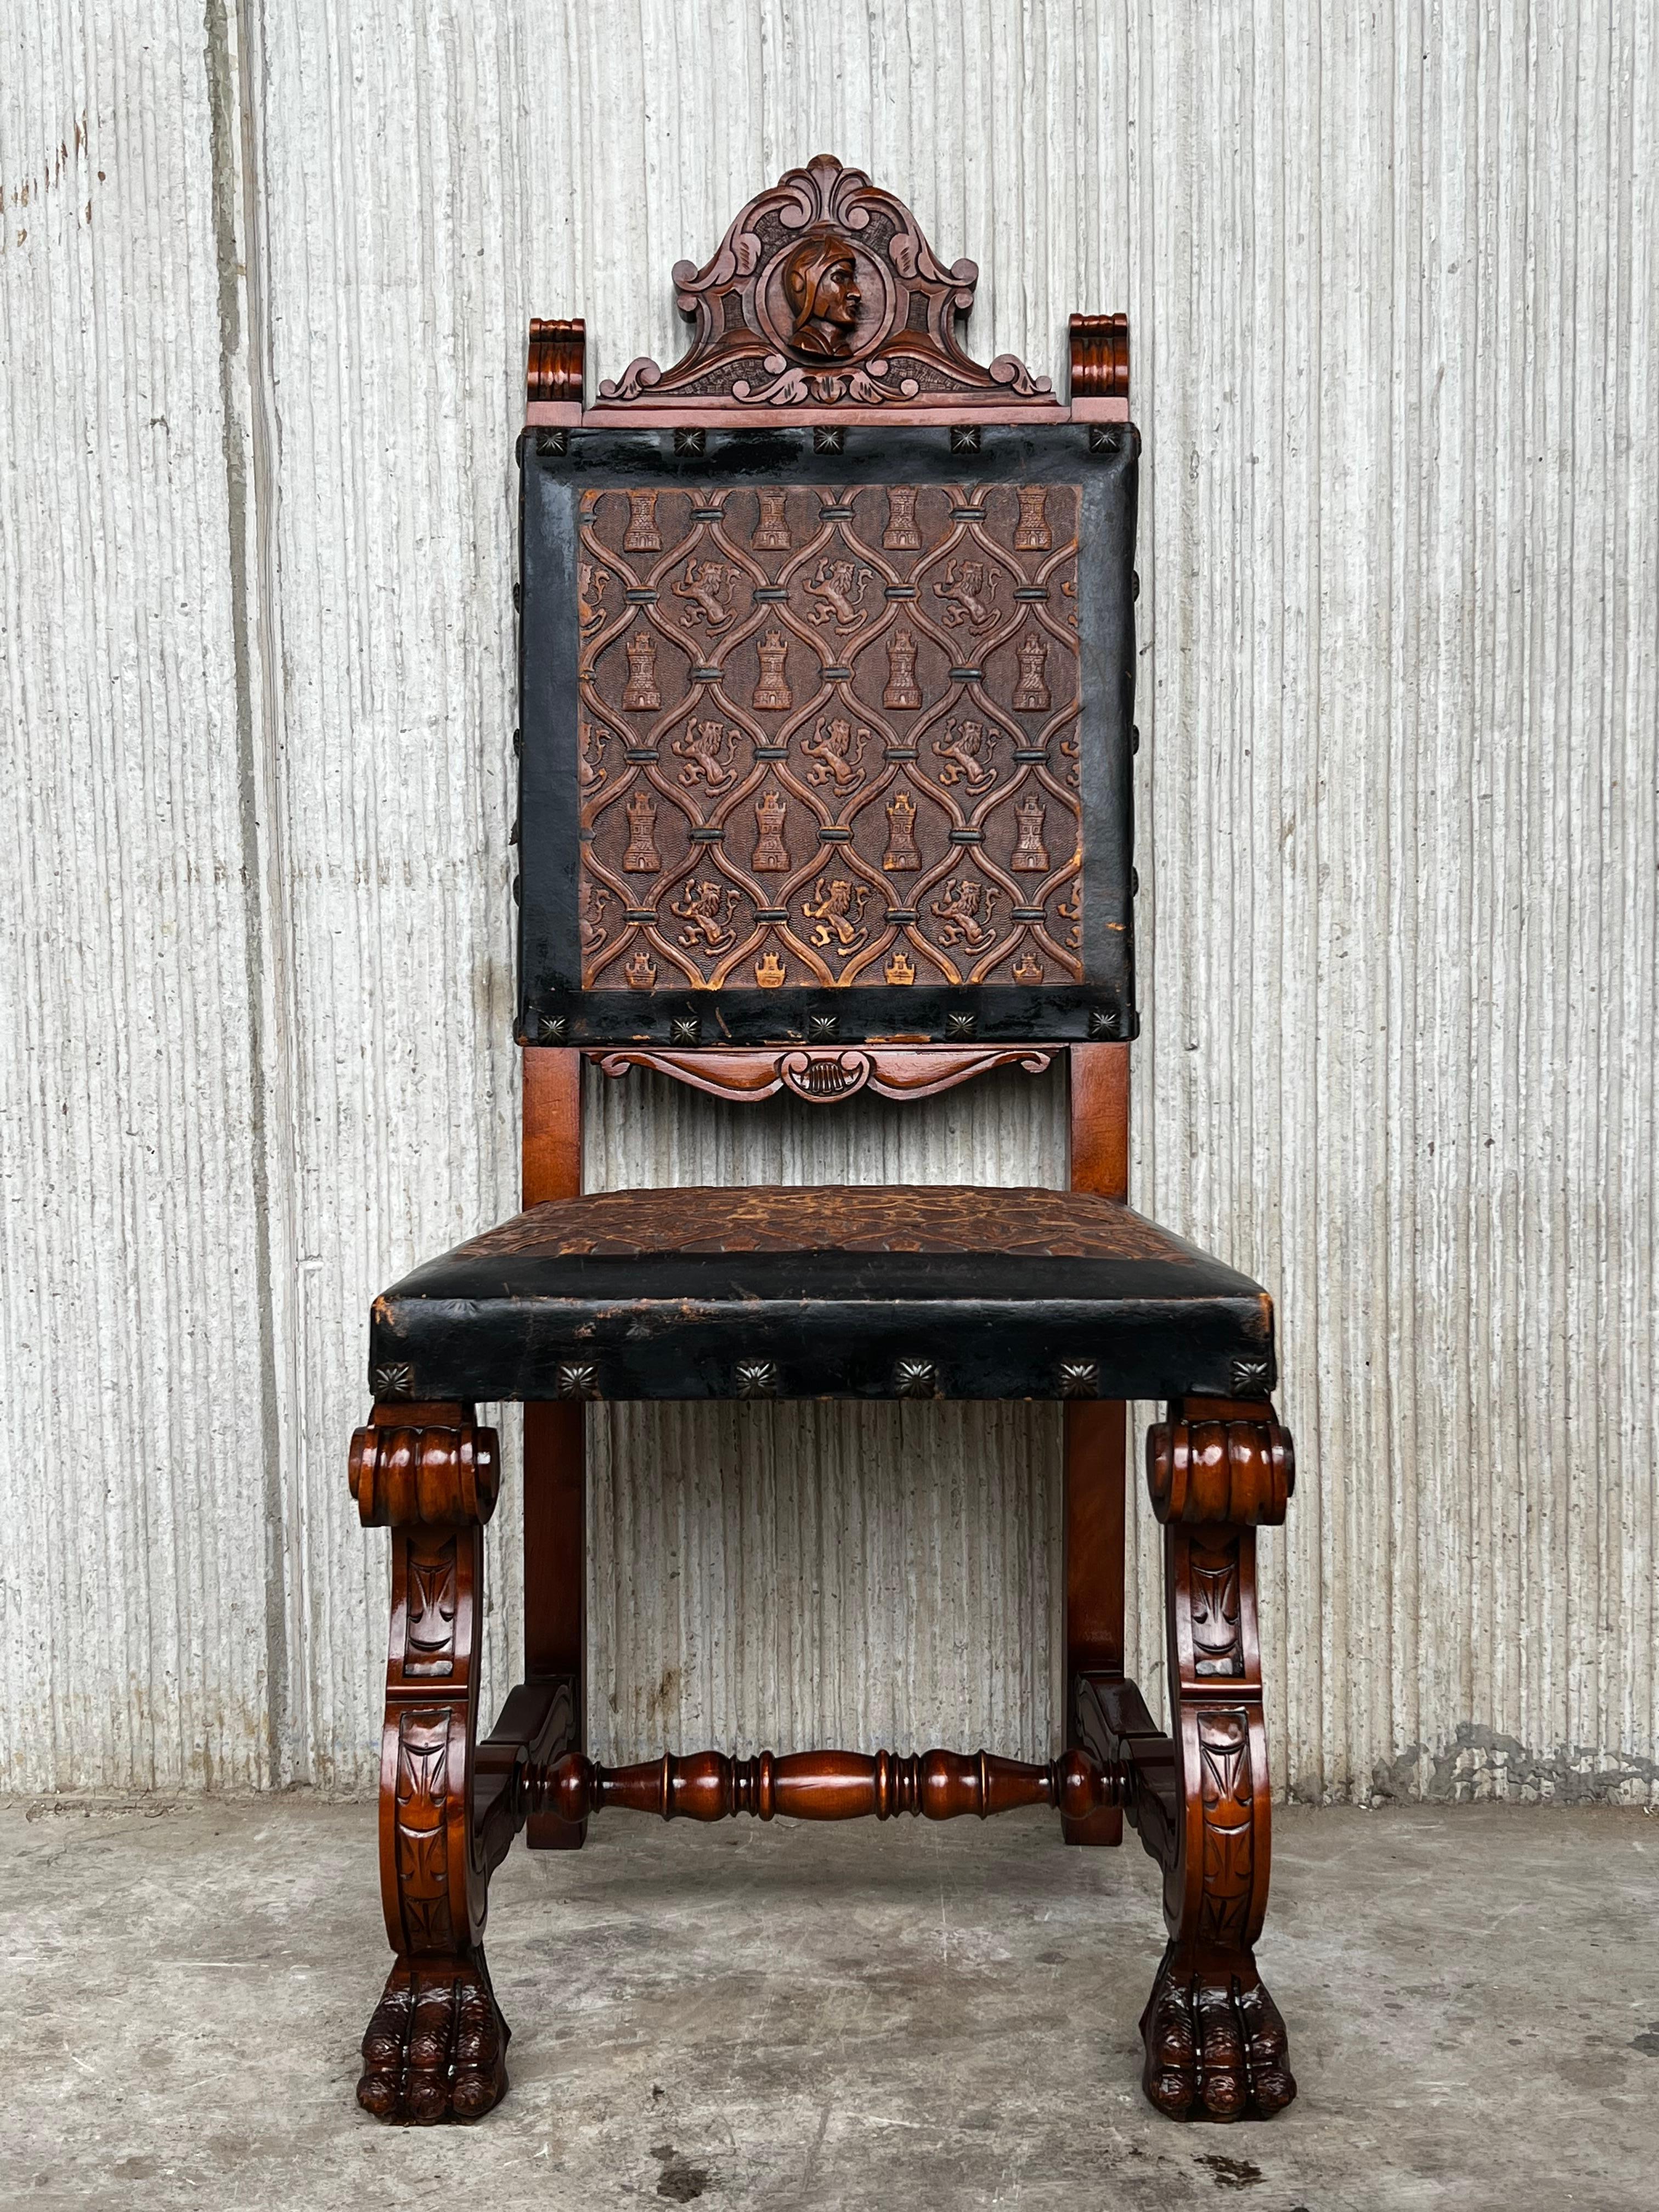 Un ensemble de 6 chaises espagnoles avec dossiers en cuir et franges sur cadres en chêne et sycomore avec décoration sculptée à la main. Ces chaises sont fidèles au caractère baroque espagnol et présentent chacune des sculptures qui utilisent des